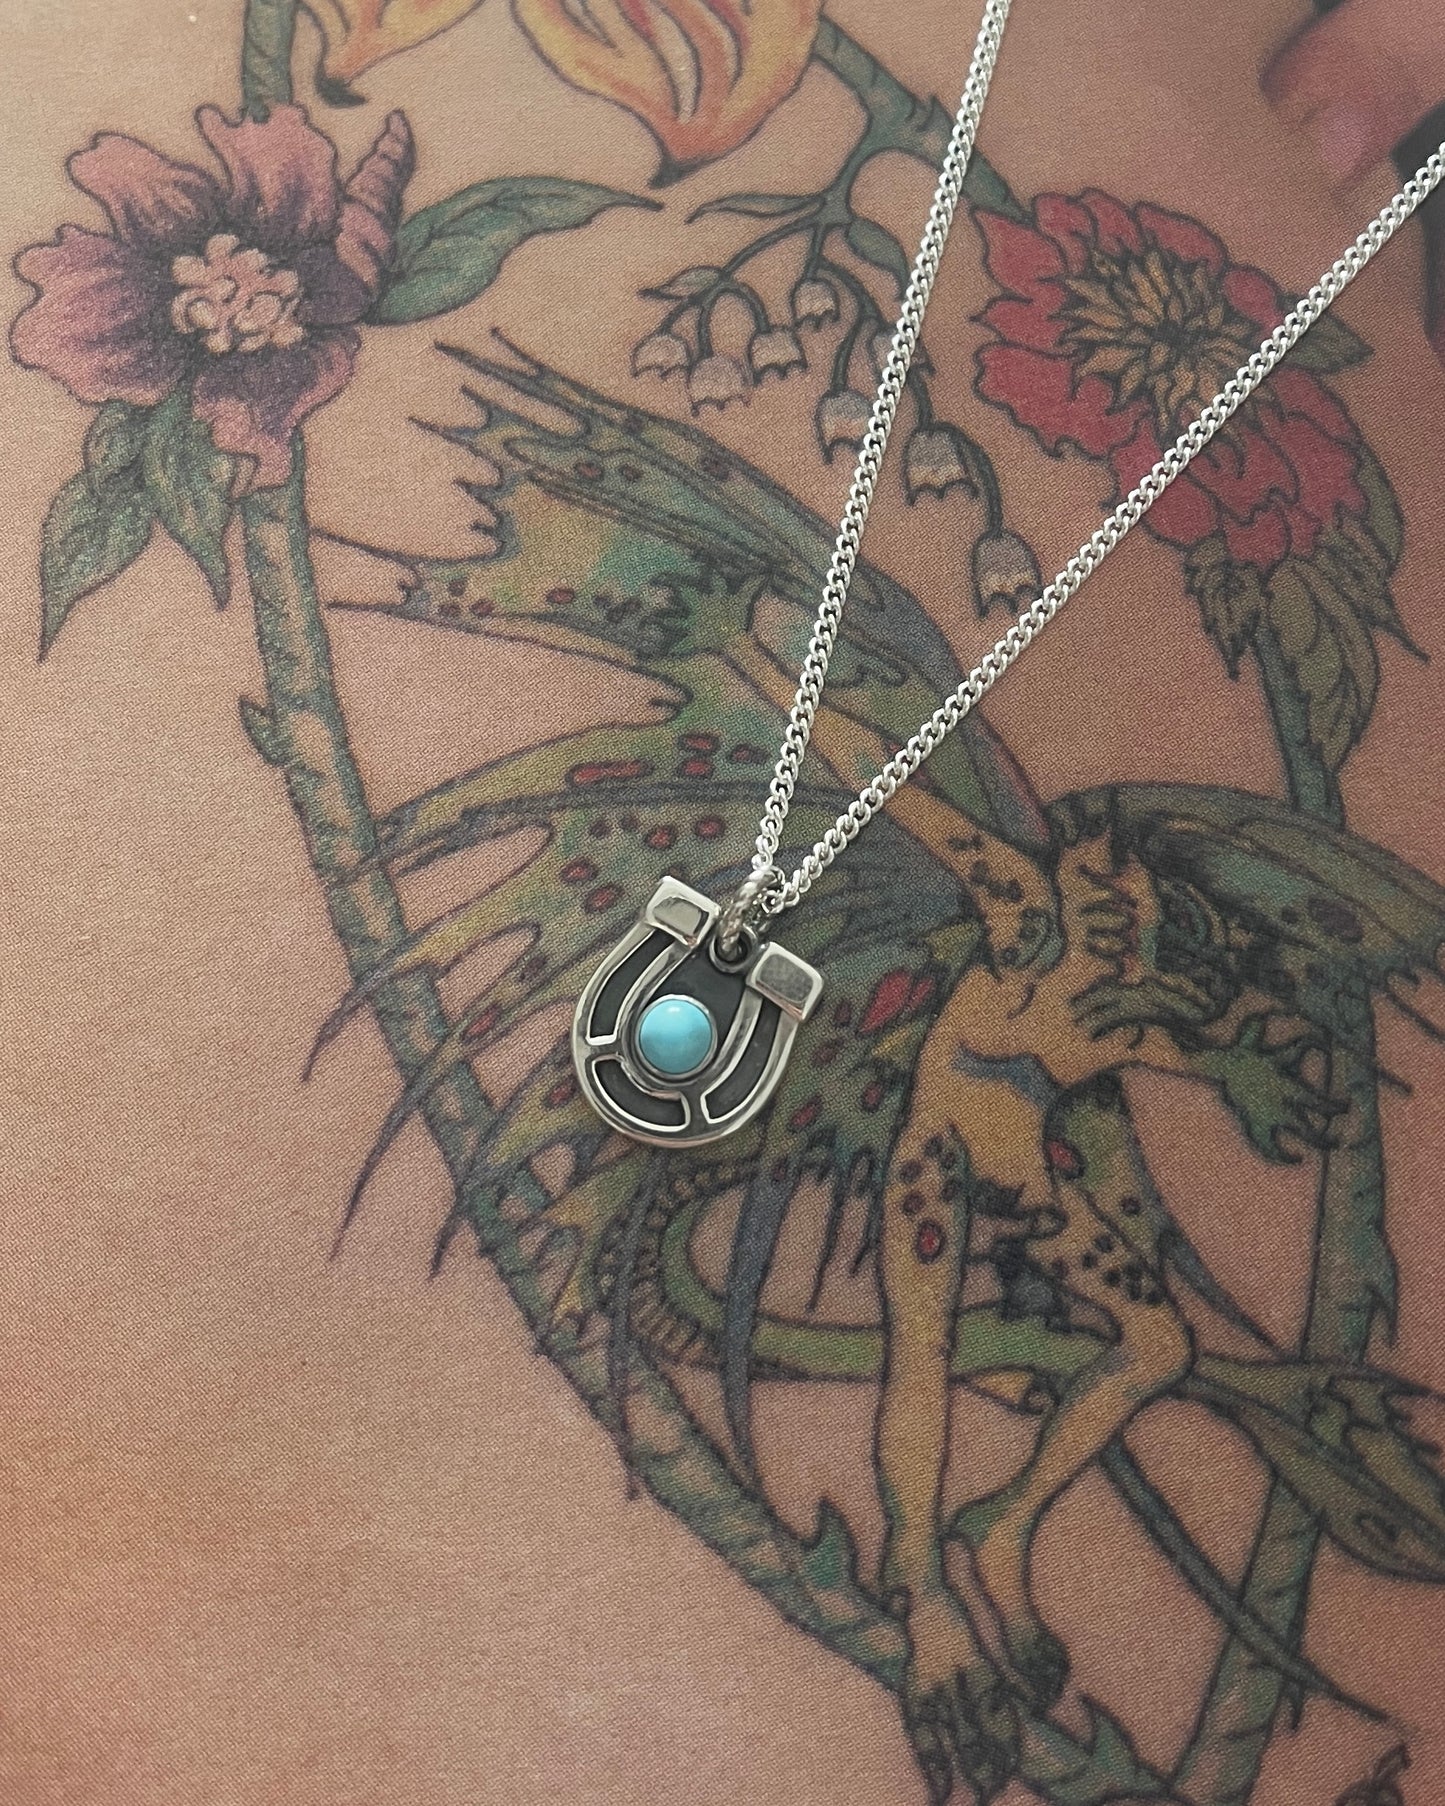 Horseshoe Necklace with Turquoise